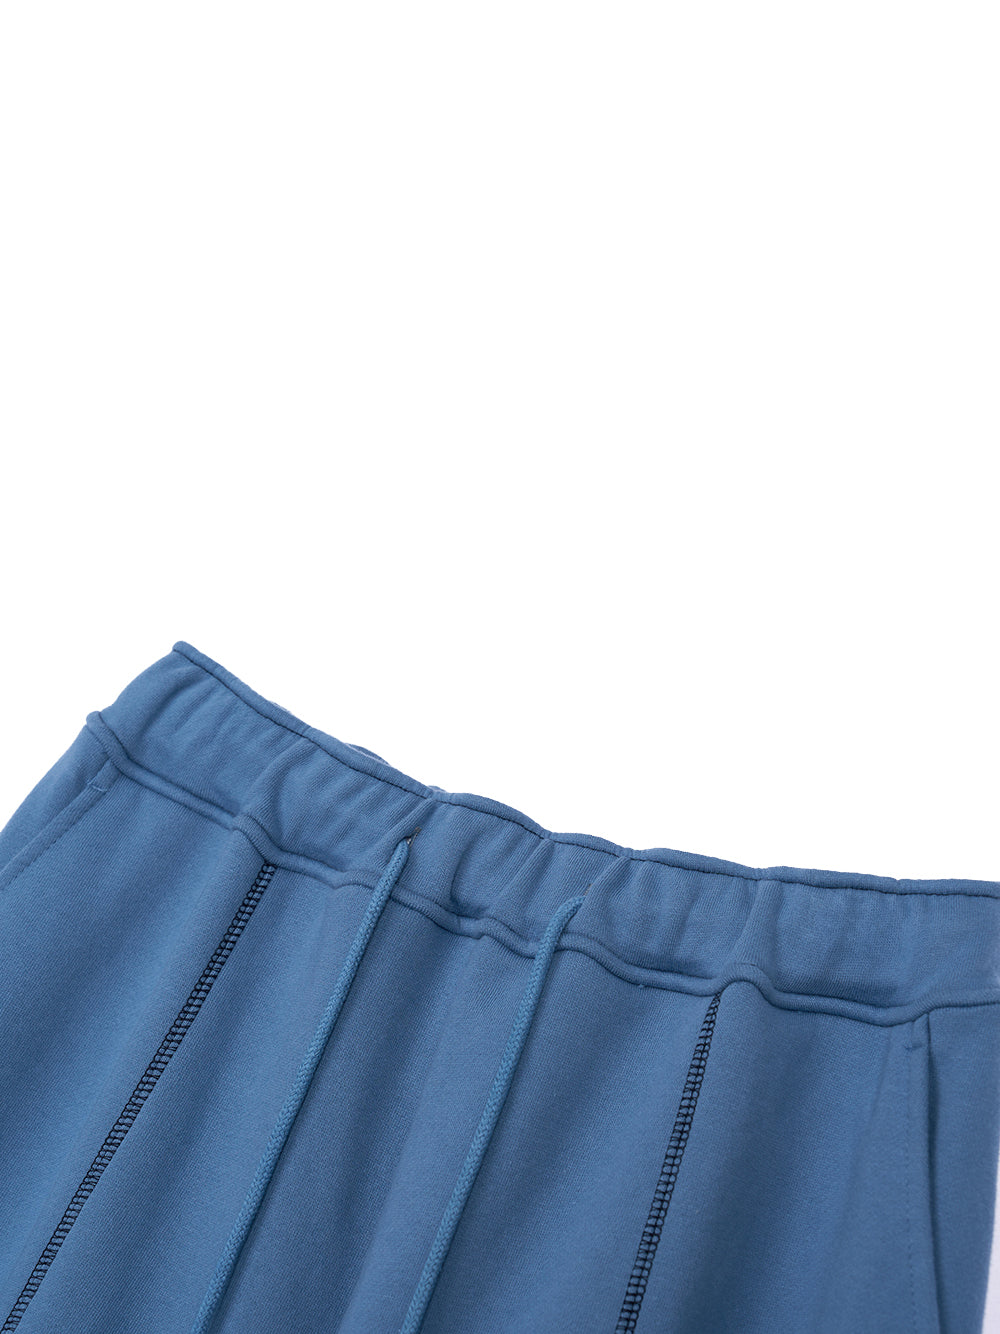 RR Coloration Sweatpants (Blue)